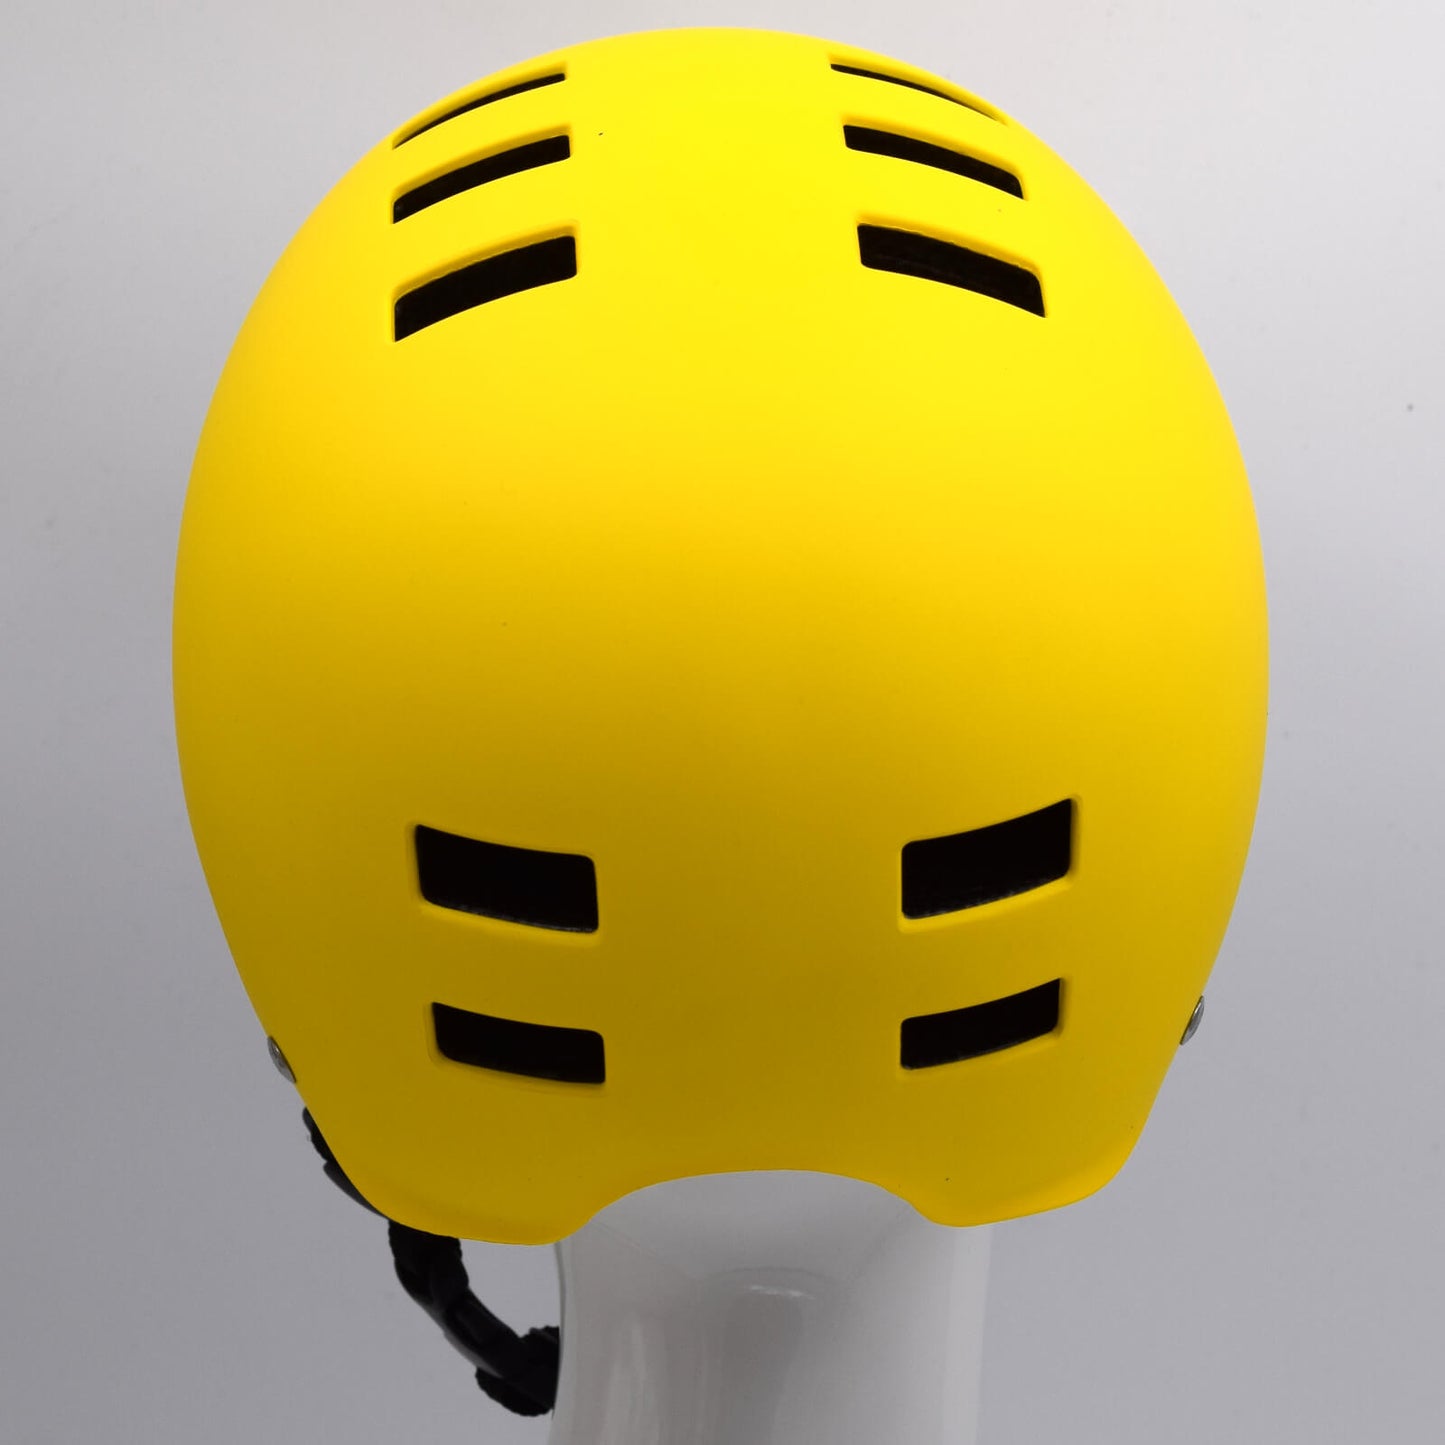 Bluegrass Super Bold BMX Dirt Lid Cycling Helmet Yellow Red Small (51-55cm) Alternate 2